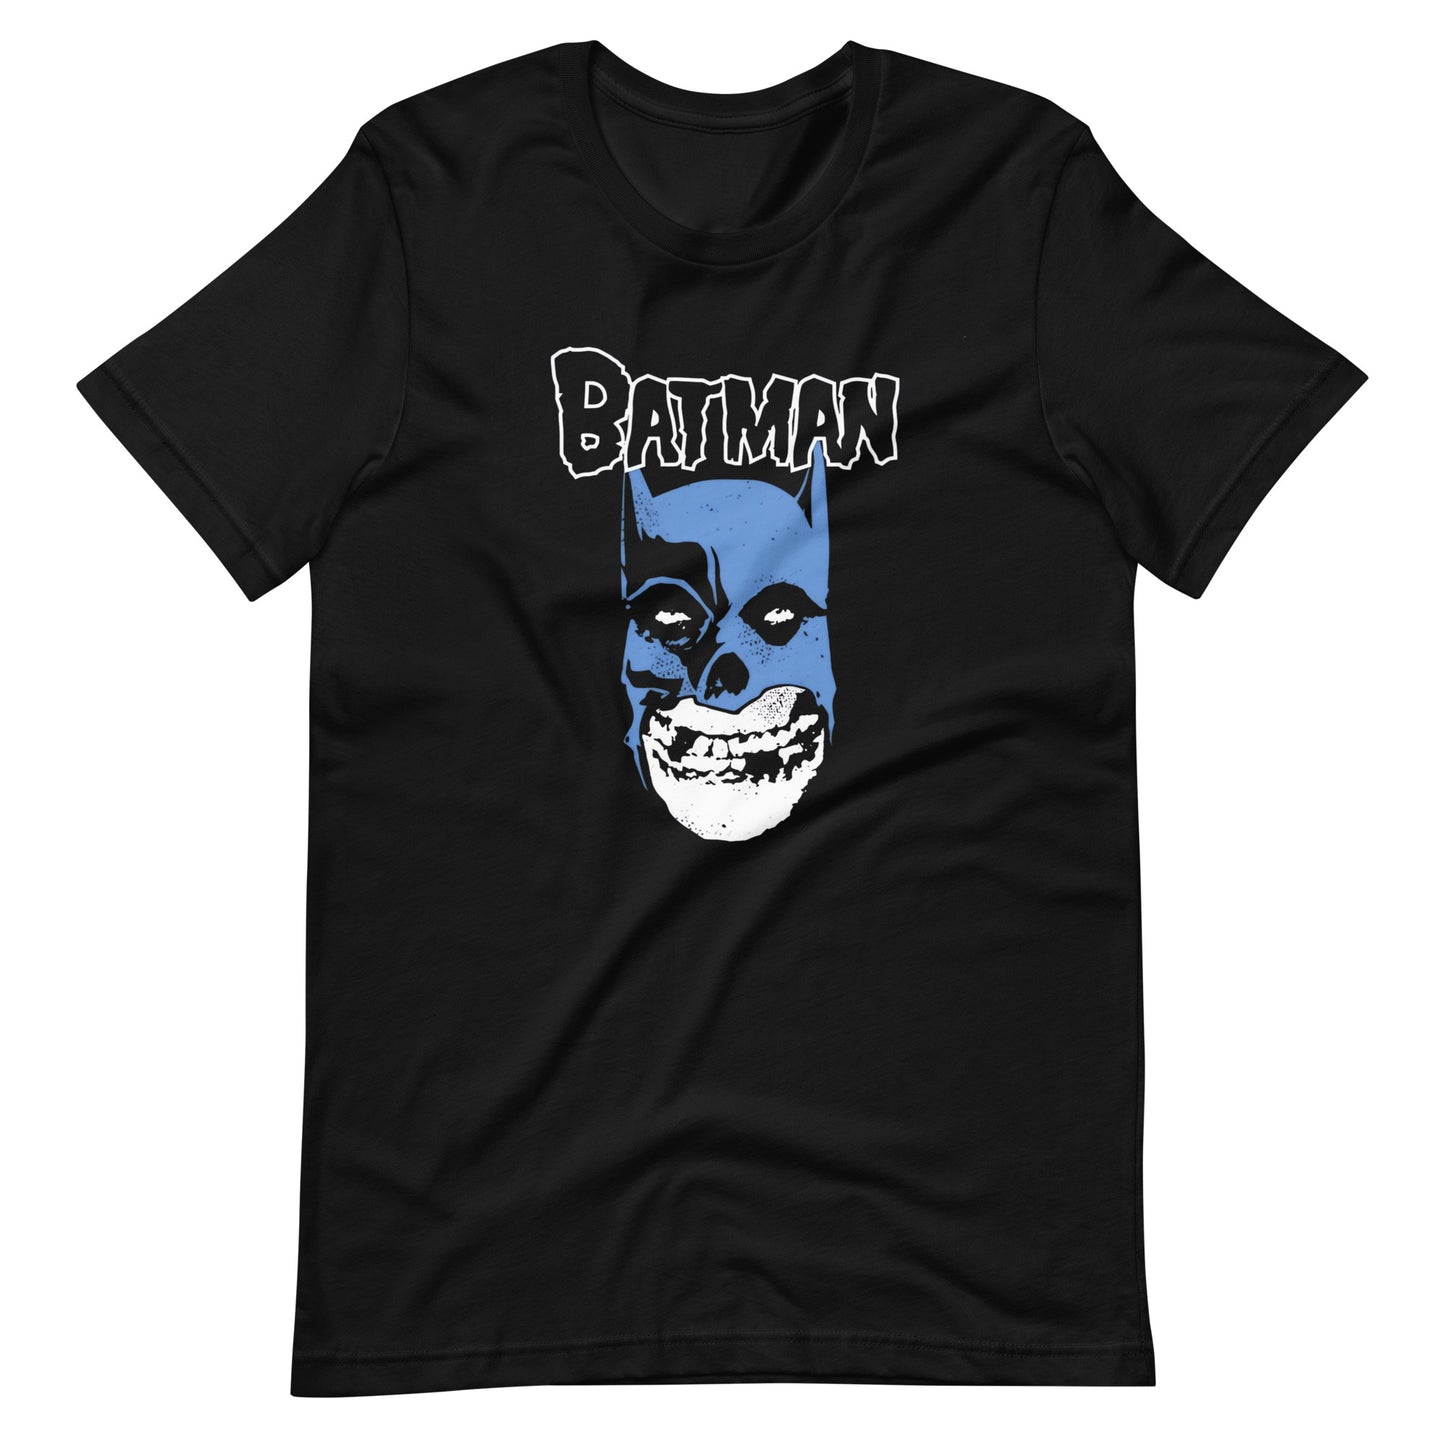 La Camiseta Batman Misfits es una prenda que combina dos iconos de la cultura pop: el Caballero de la Noche y la banda de punk rock The Misfits.